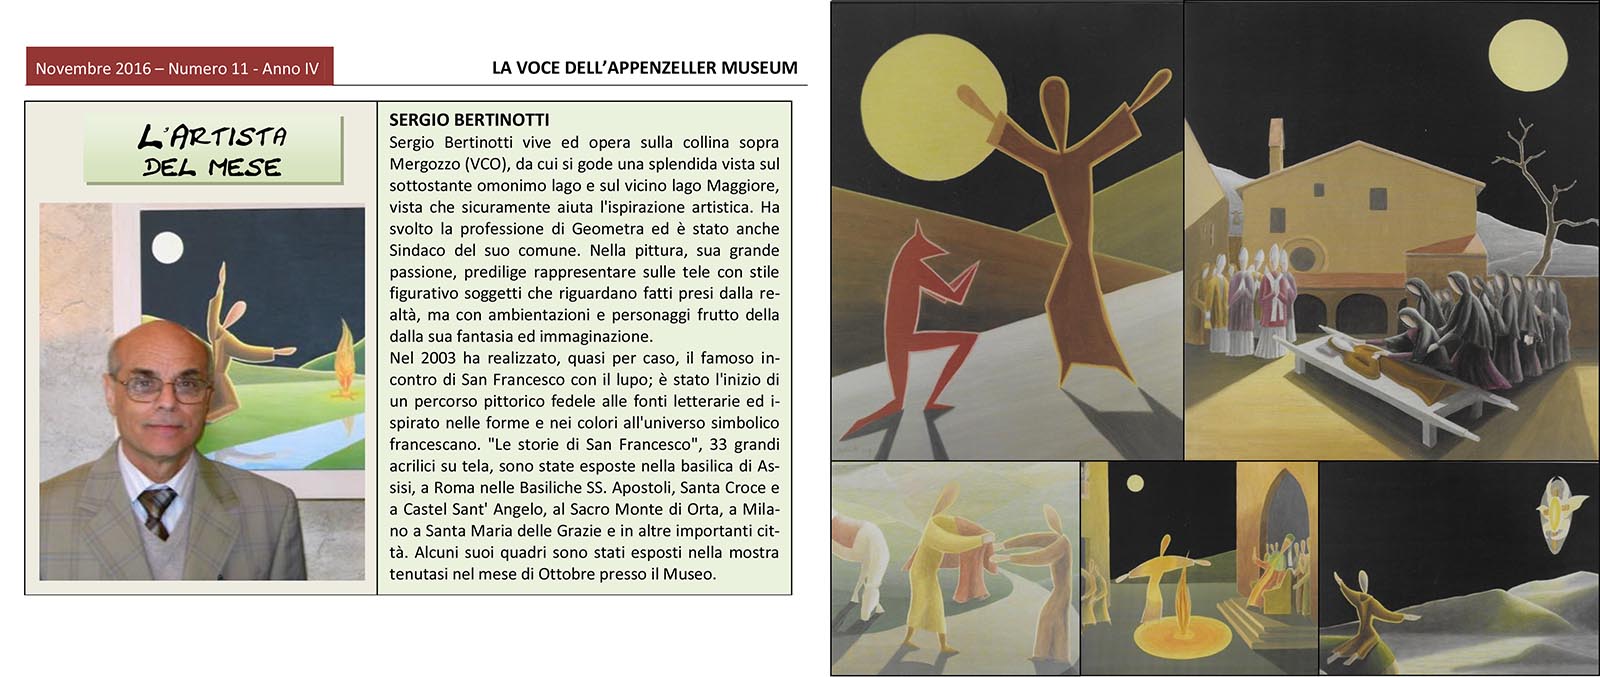 Novembre 2016, n.11, La Voce dell’Appenzeller Museum – Sergio Bertinotti, Artista del mese